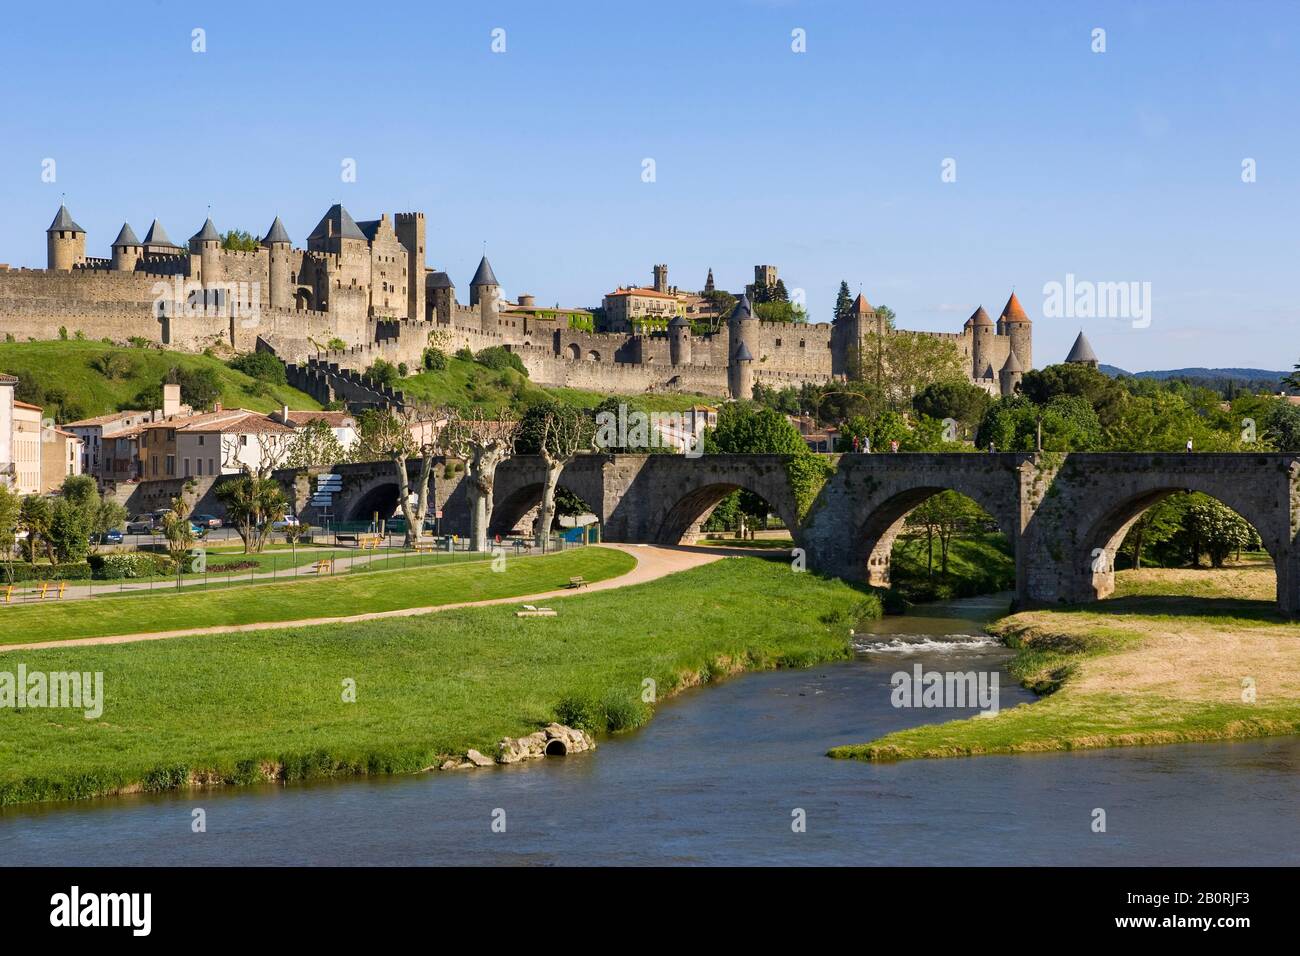 Patrimonio dell'umanità dell'UNESCO, fiume Aude, città fortificata medievale, Carcassonne, dipartimento dell'Aude, Languedoc-Rousillon, Francia Foto Stock